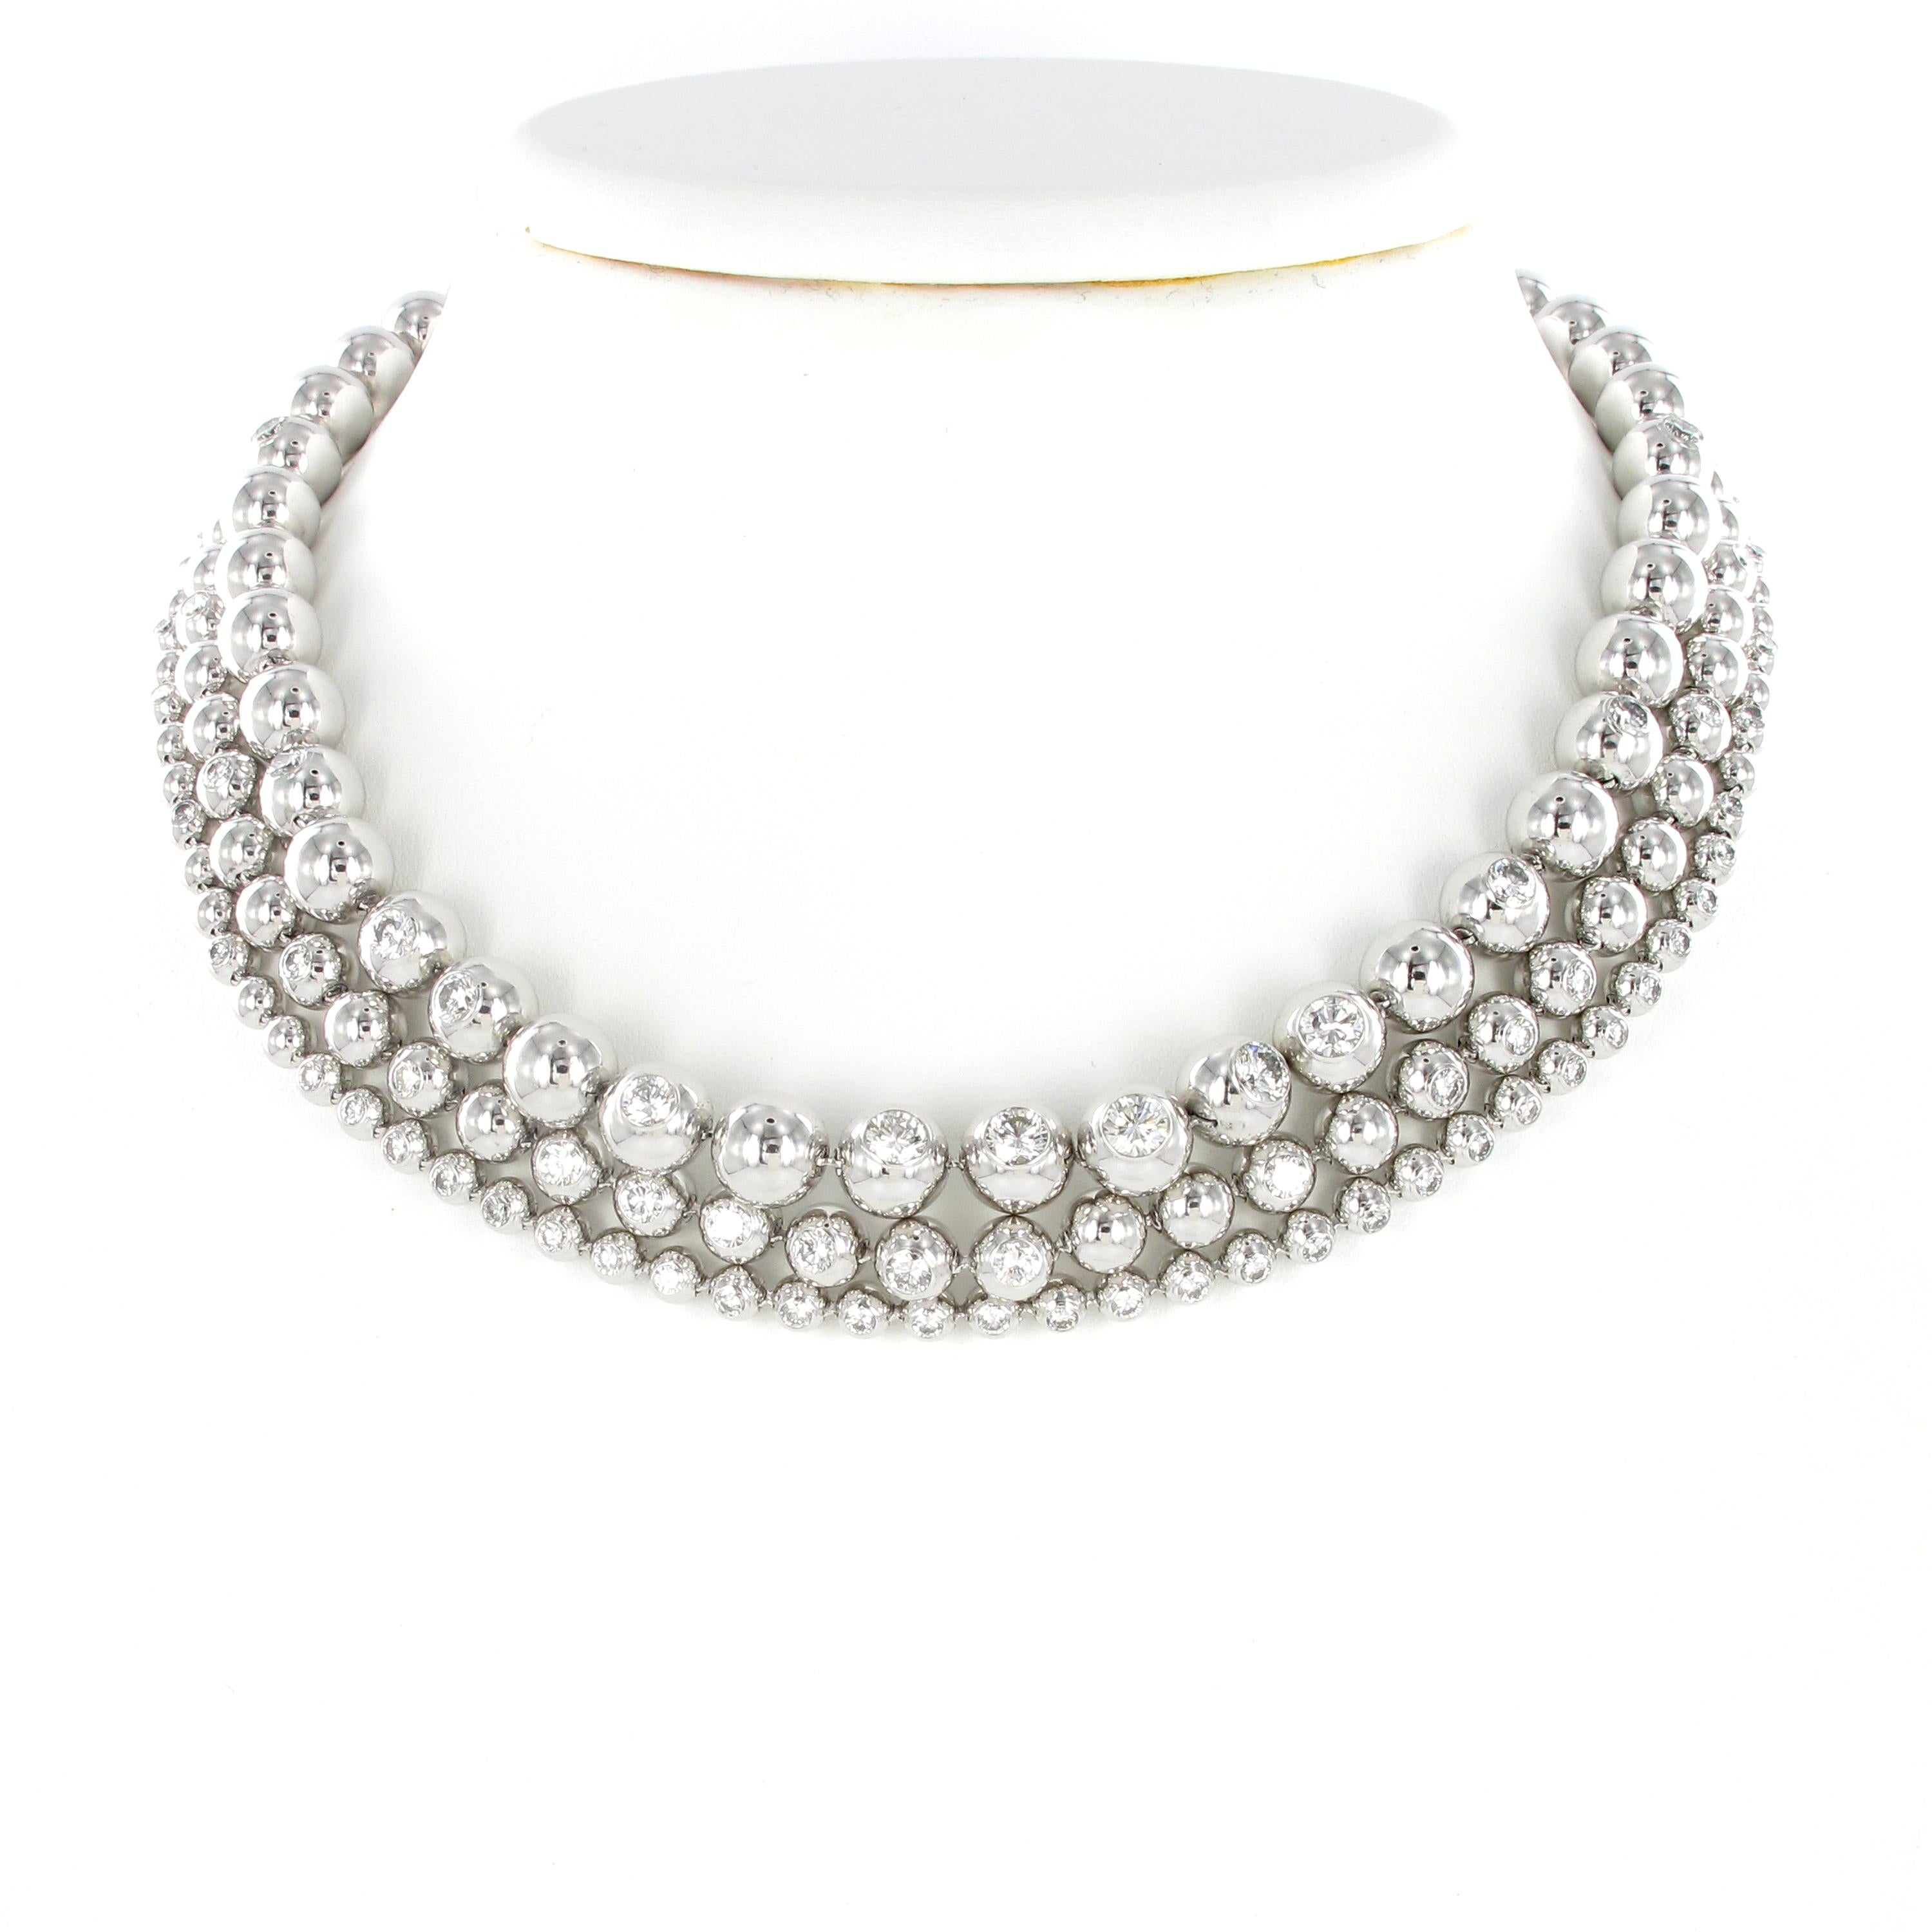 cartier diamond necklace